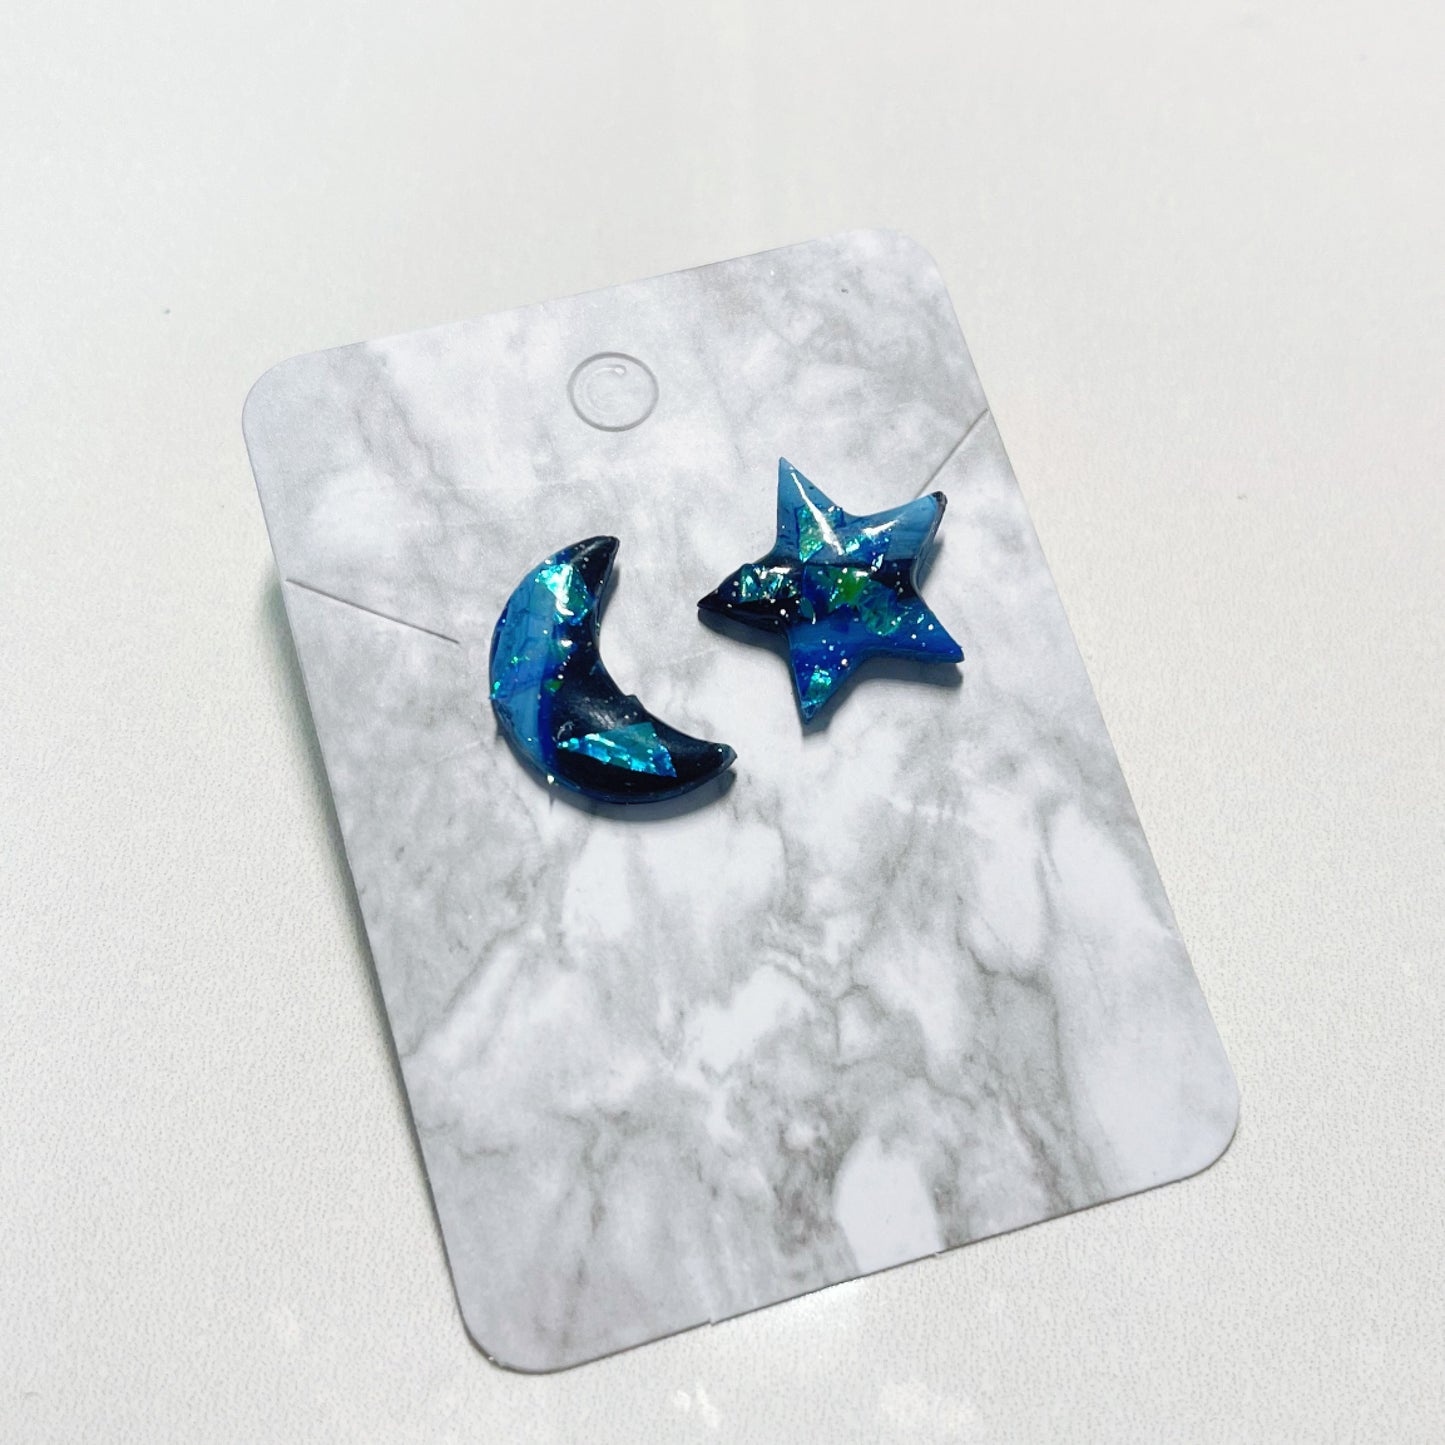 Moon Star Earrings $15